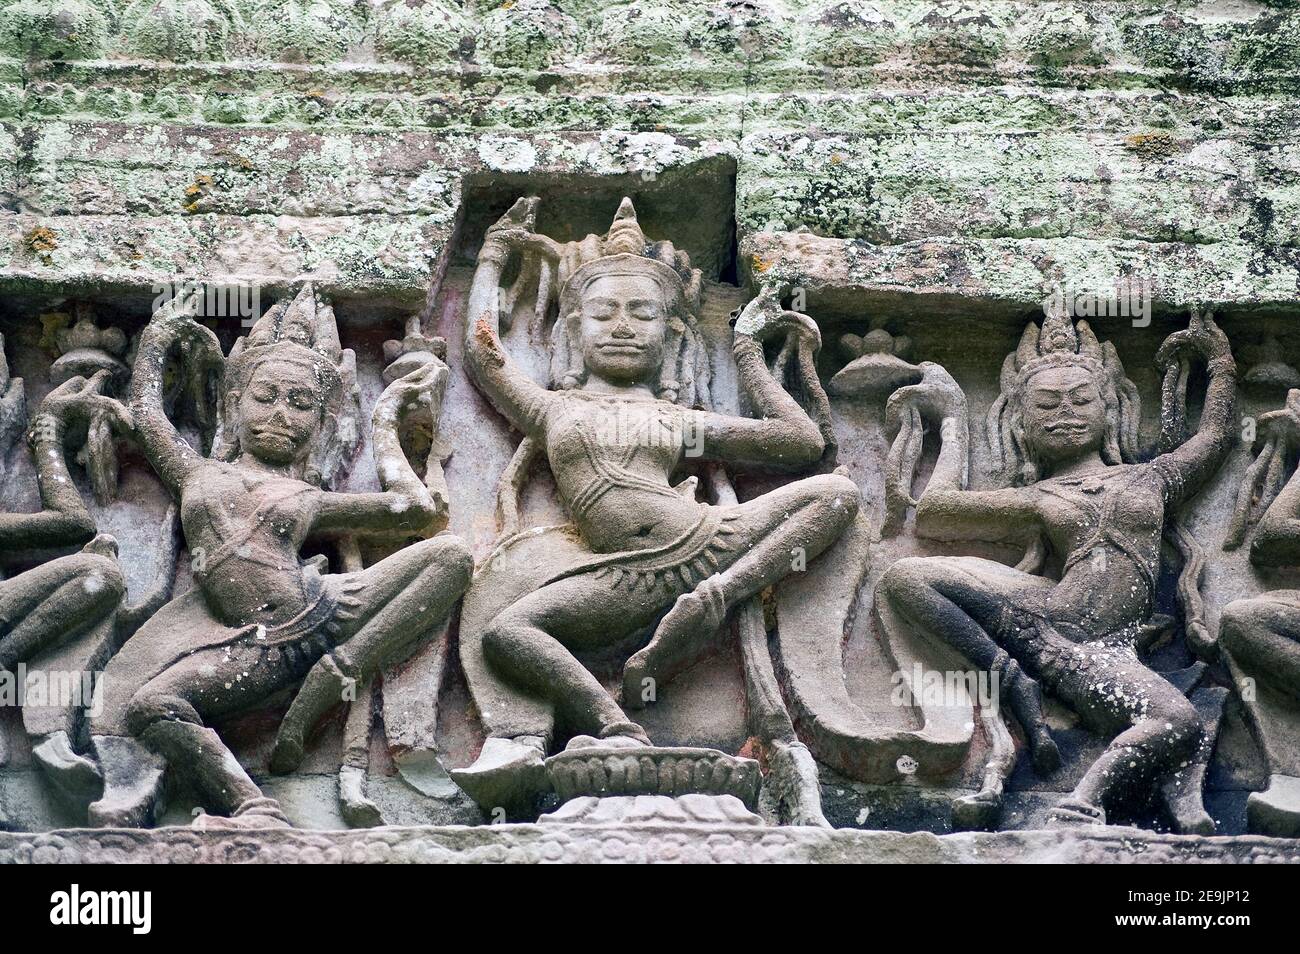 Particolare di scultura di ballerini di Apsara nella Sala dei ballerini al Tempio di Preah Khan, Angkor, Cambogia. Scultura antica, di centinaia di anni. Foto Stock